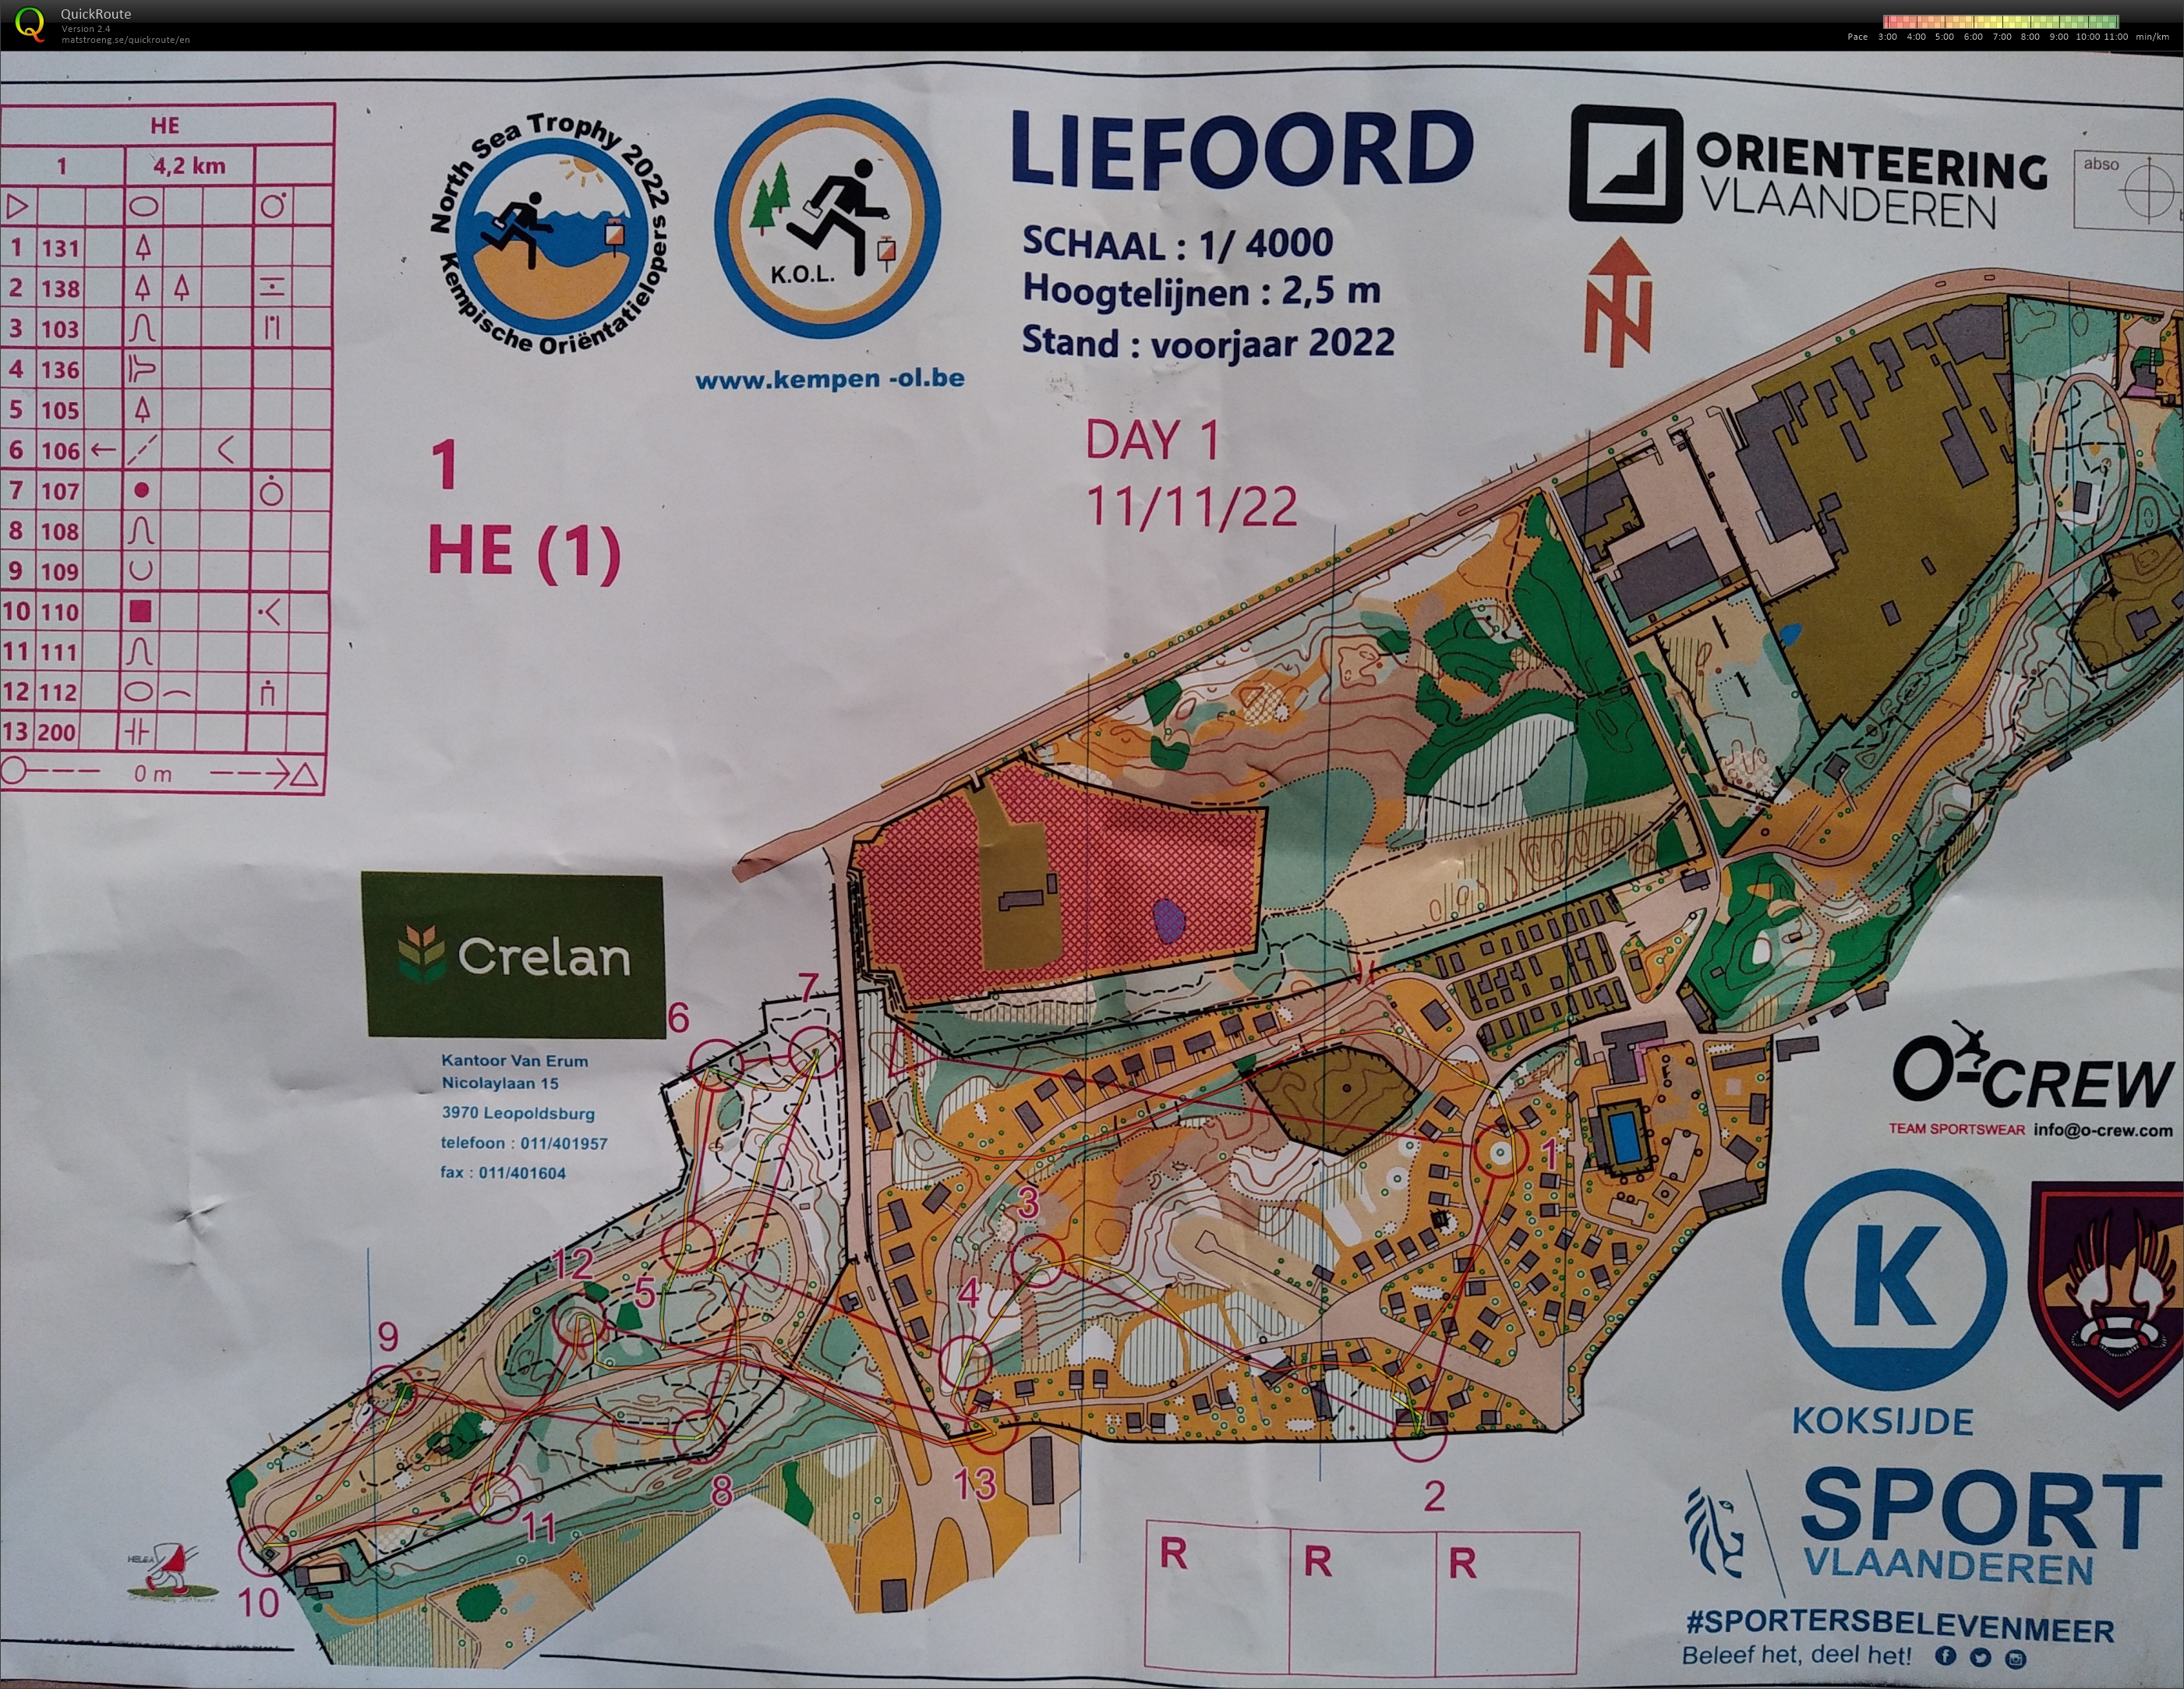 Liefoord deel 1, north sea trophy dag 1, Koksijde (11/11/2022)